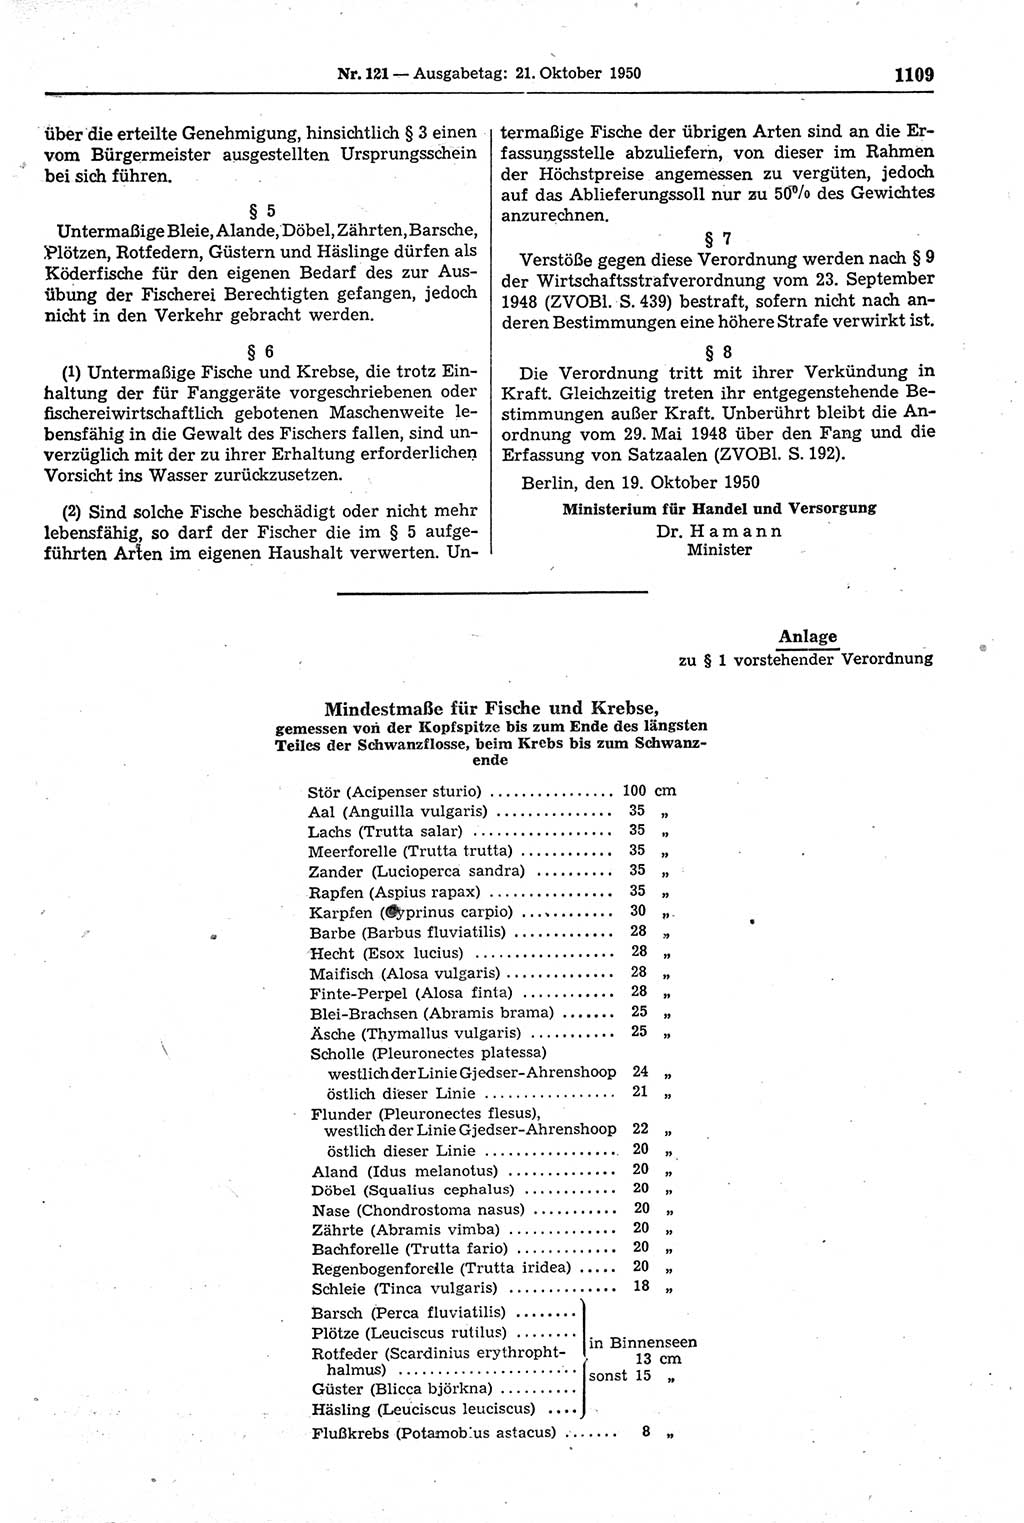 Gesetzblatt (GBl.) der Deutschen Demokratischen Republik (DDR) 1950, Seite 1109 (GBl. DDR 1950, S. 1109)